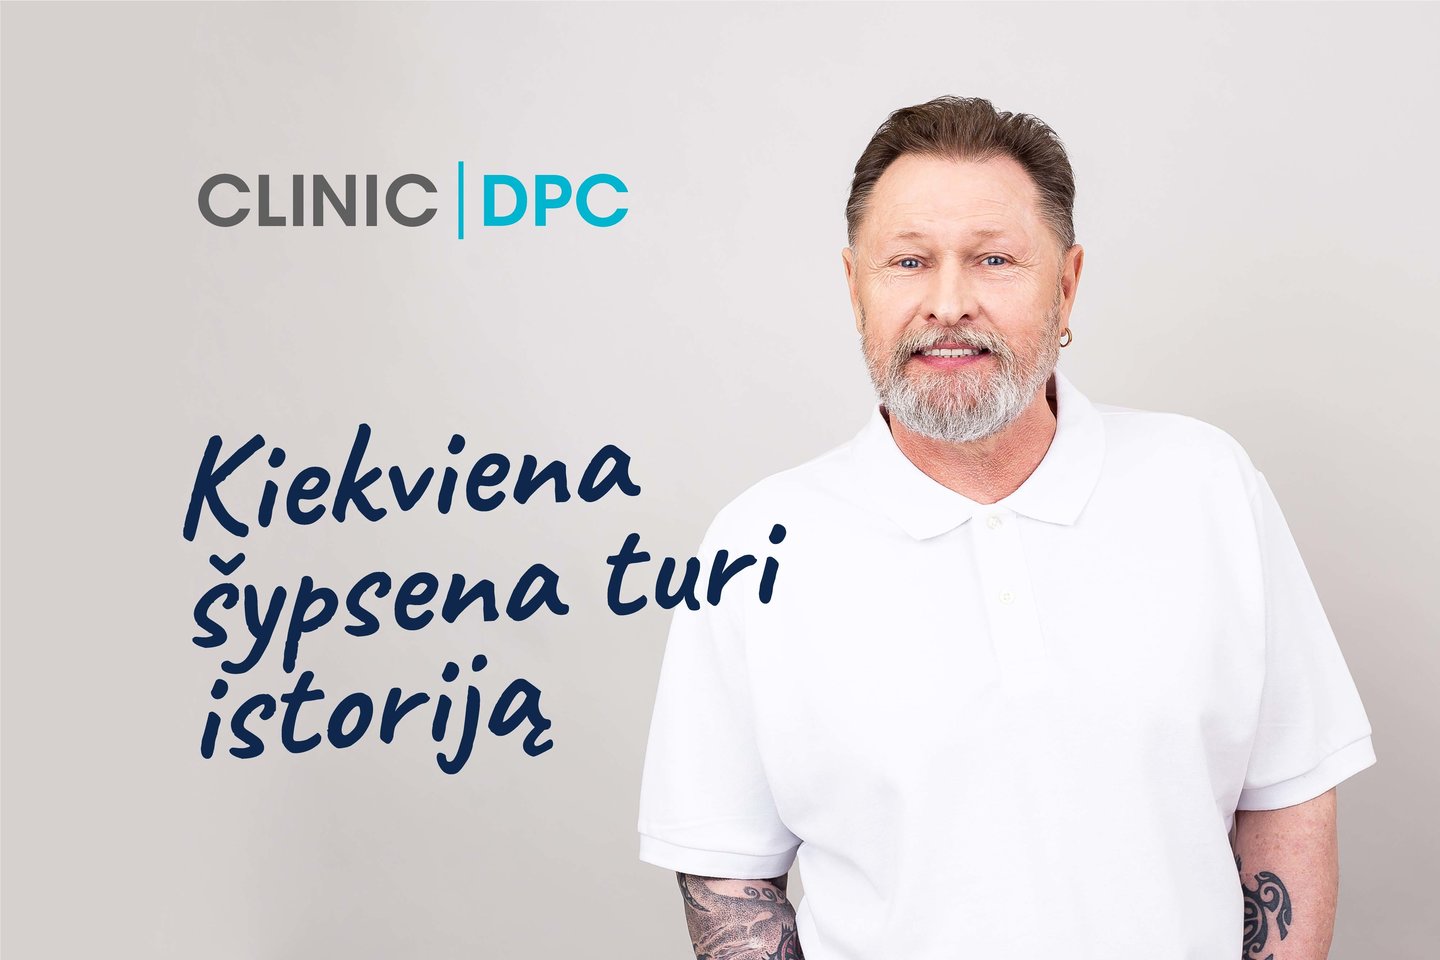 Didžiausias Lietuvoje odontologijos klinikų tinklas CLINIC | DPC savo dešimtojo gimtadienio proga nusprendė atsidėkoti visuomenei ir įgyvendinti socialinį projektą „Kiekviena šypsena turi istoriją“.